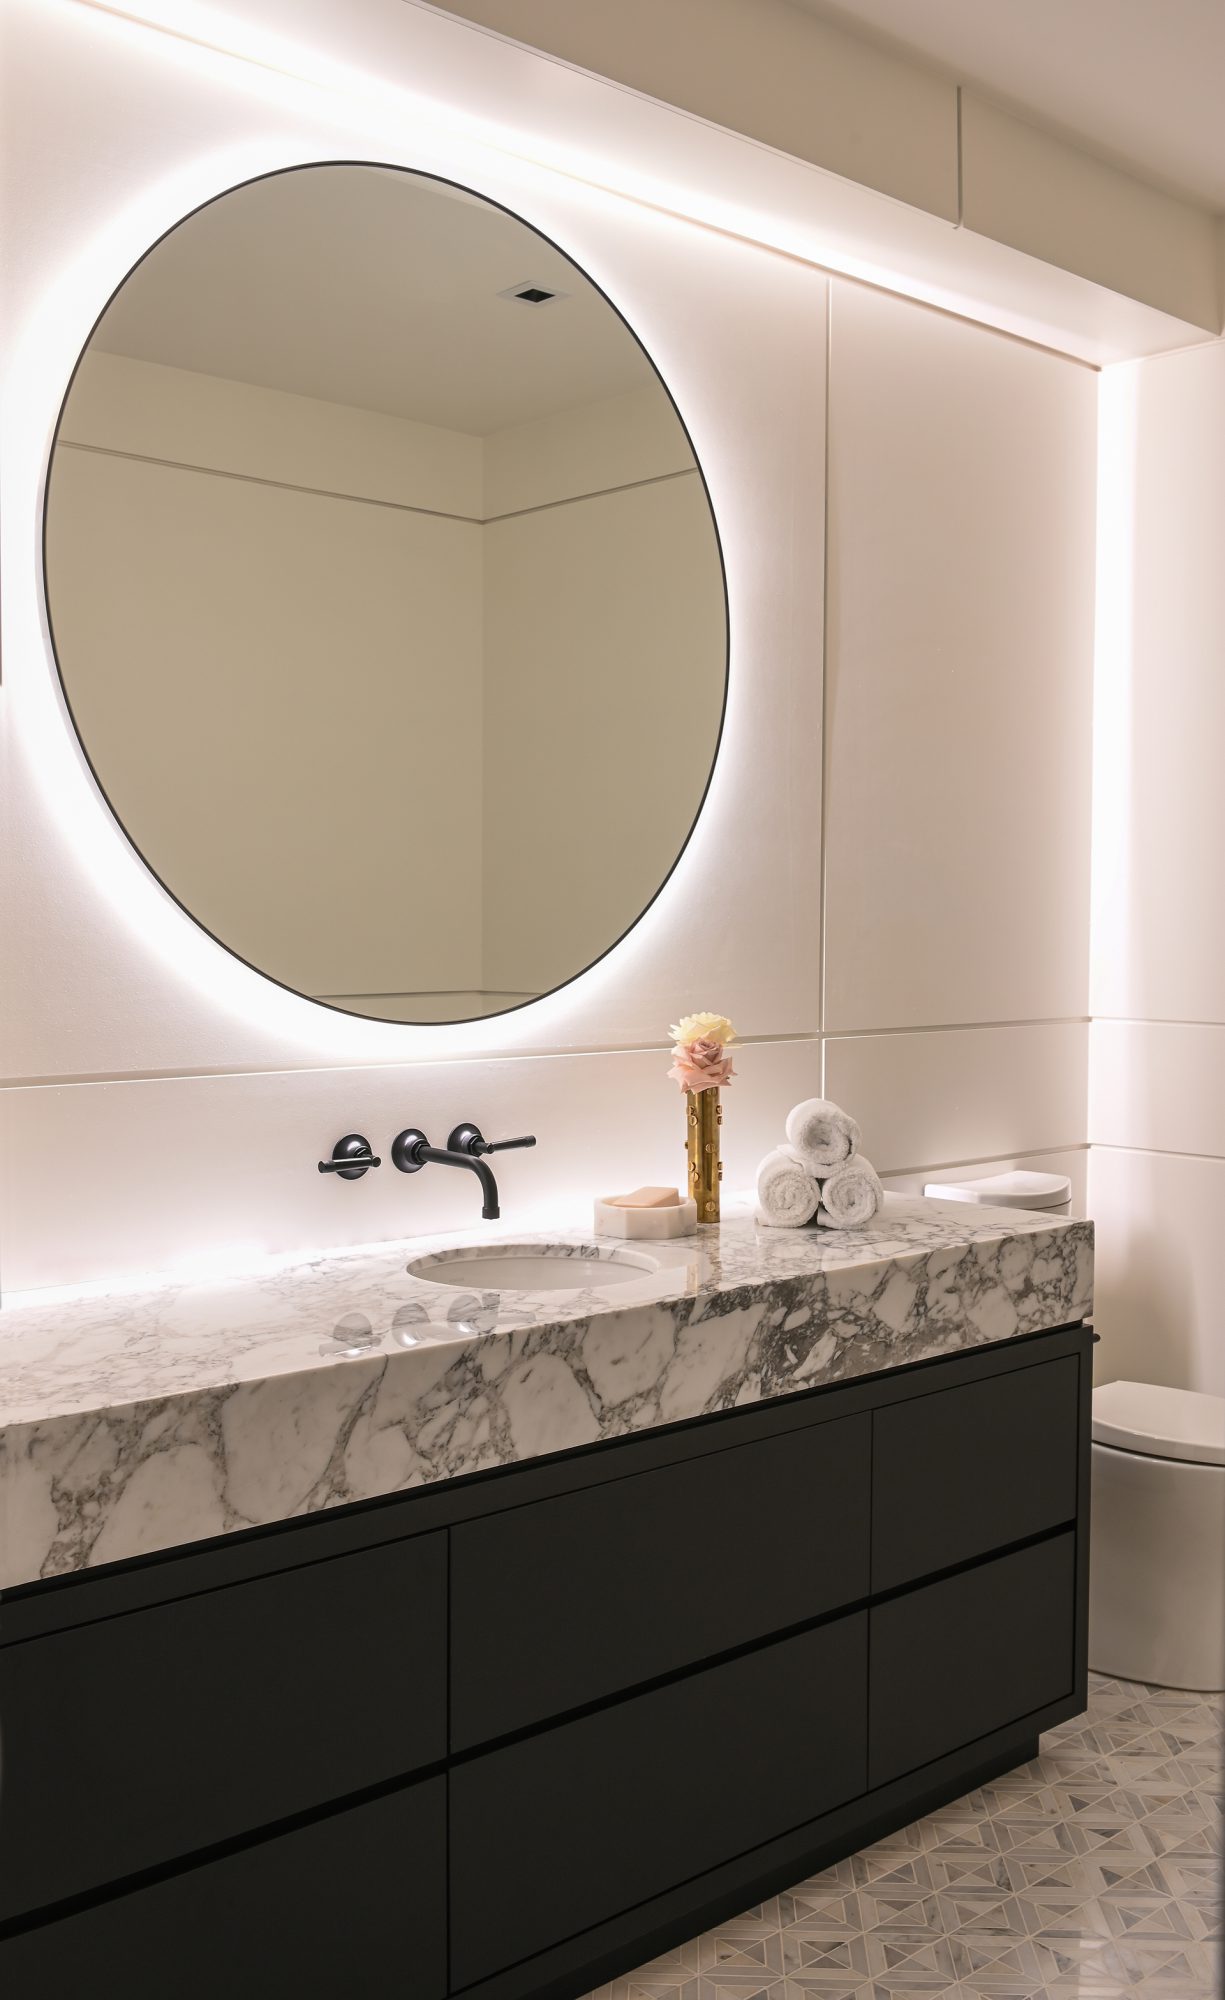 Ferme Moderne bathroom vanity built by Midland Premium Properties in Vancouver, BC